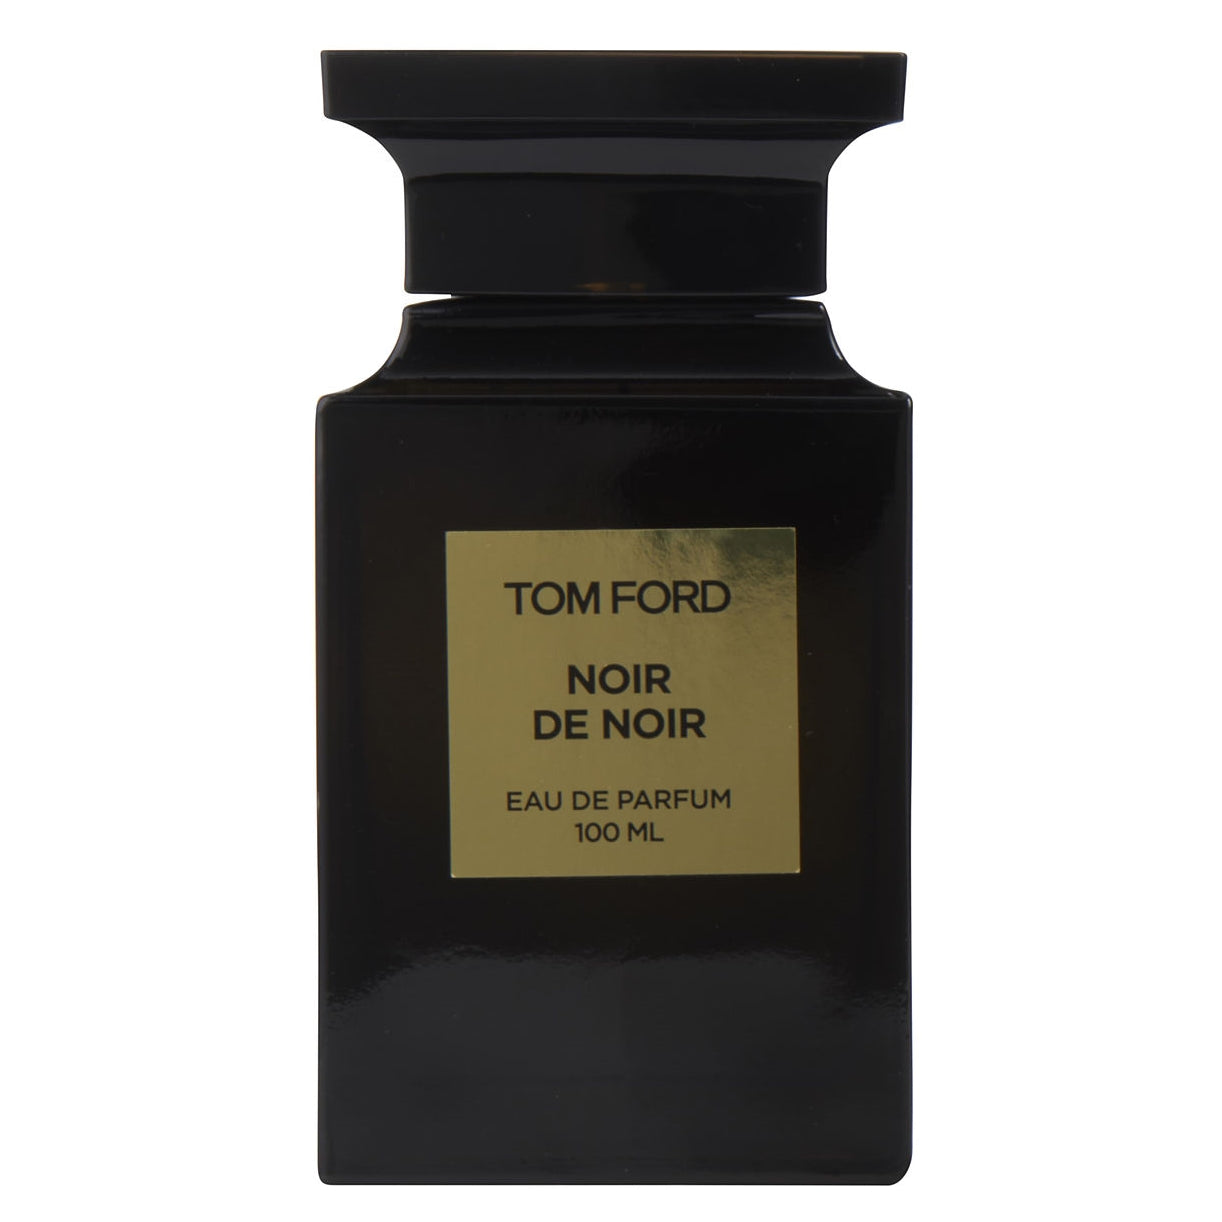 Tom Ford Noir de Noir Eau de Parfum Unisex – DecantX Perfume